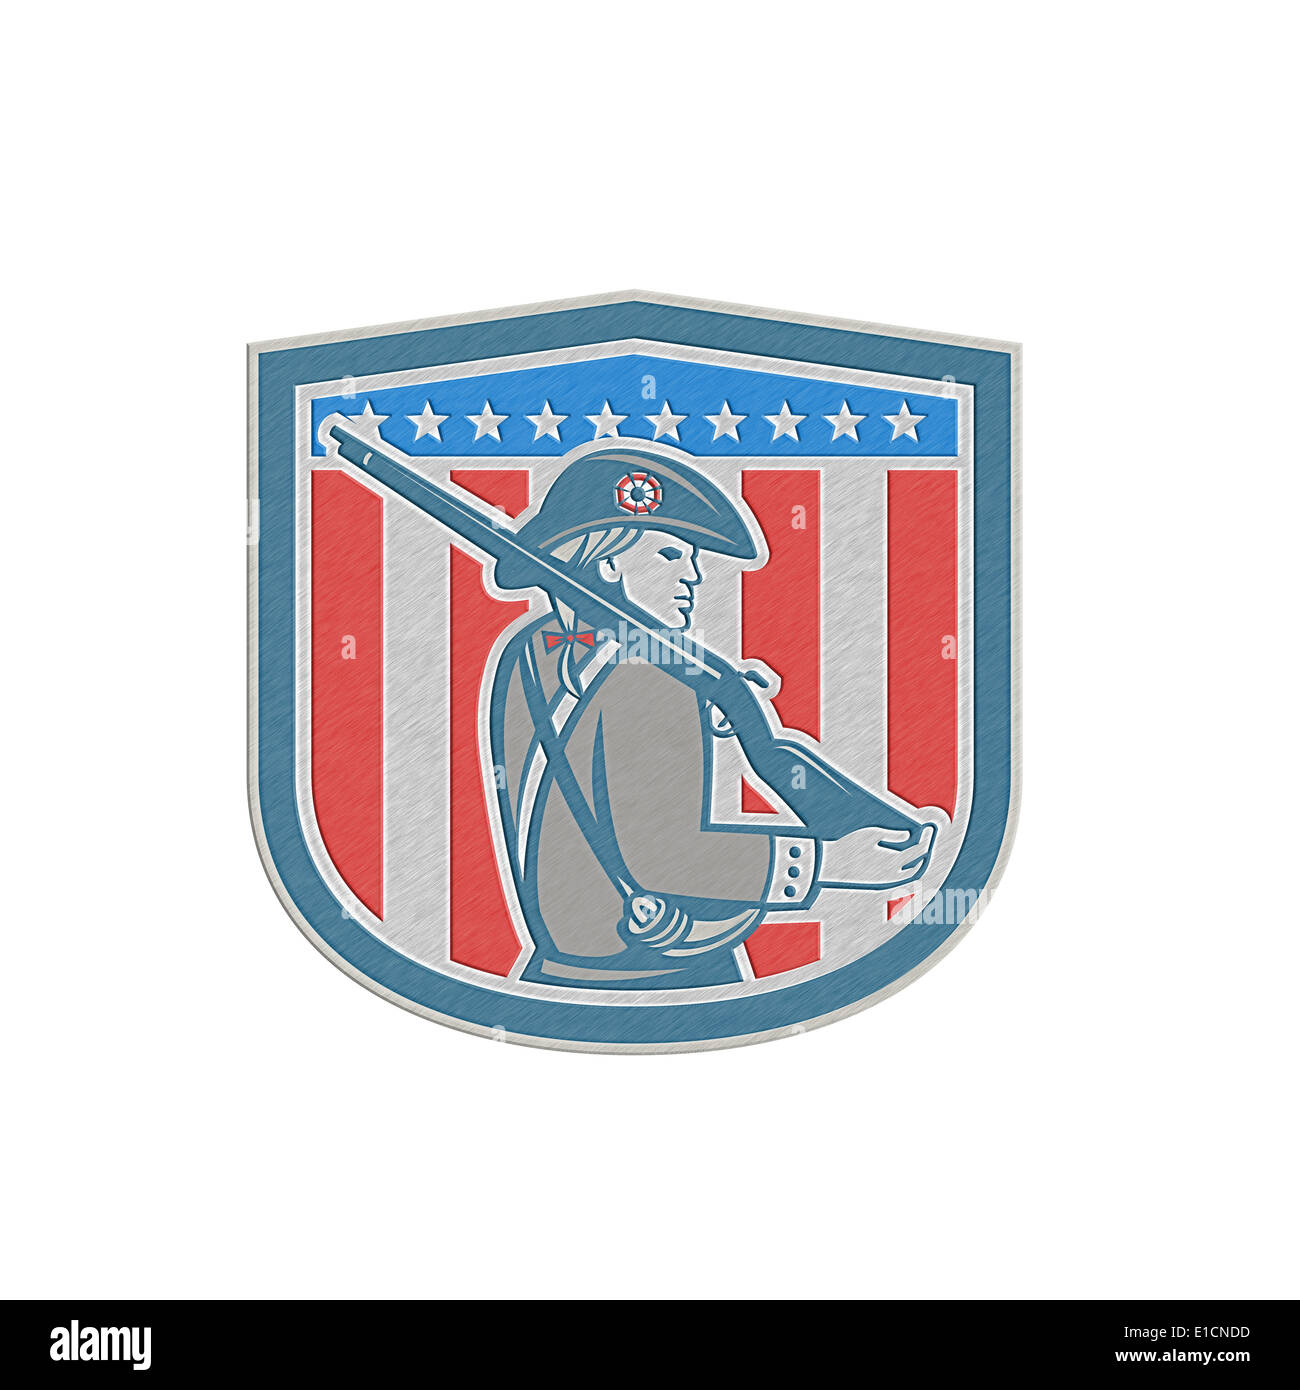 Style métallique illustration d'un patriote américain Minuteman tenant une carabine fusil face situé à l''intérieur crest protection avec st Banque D'Images